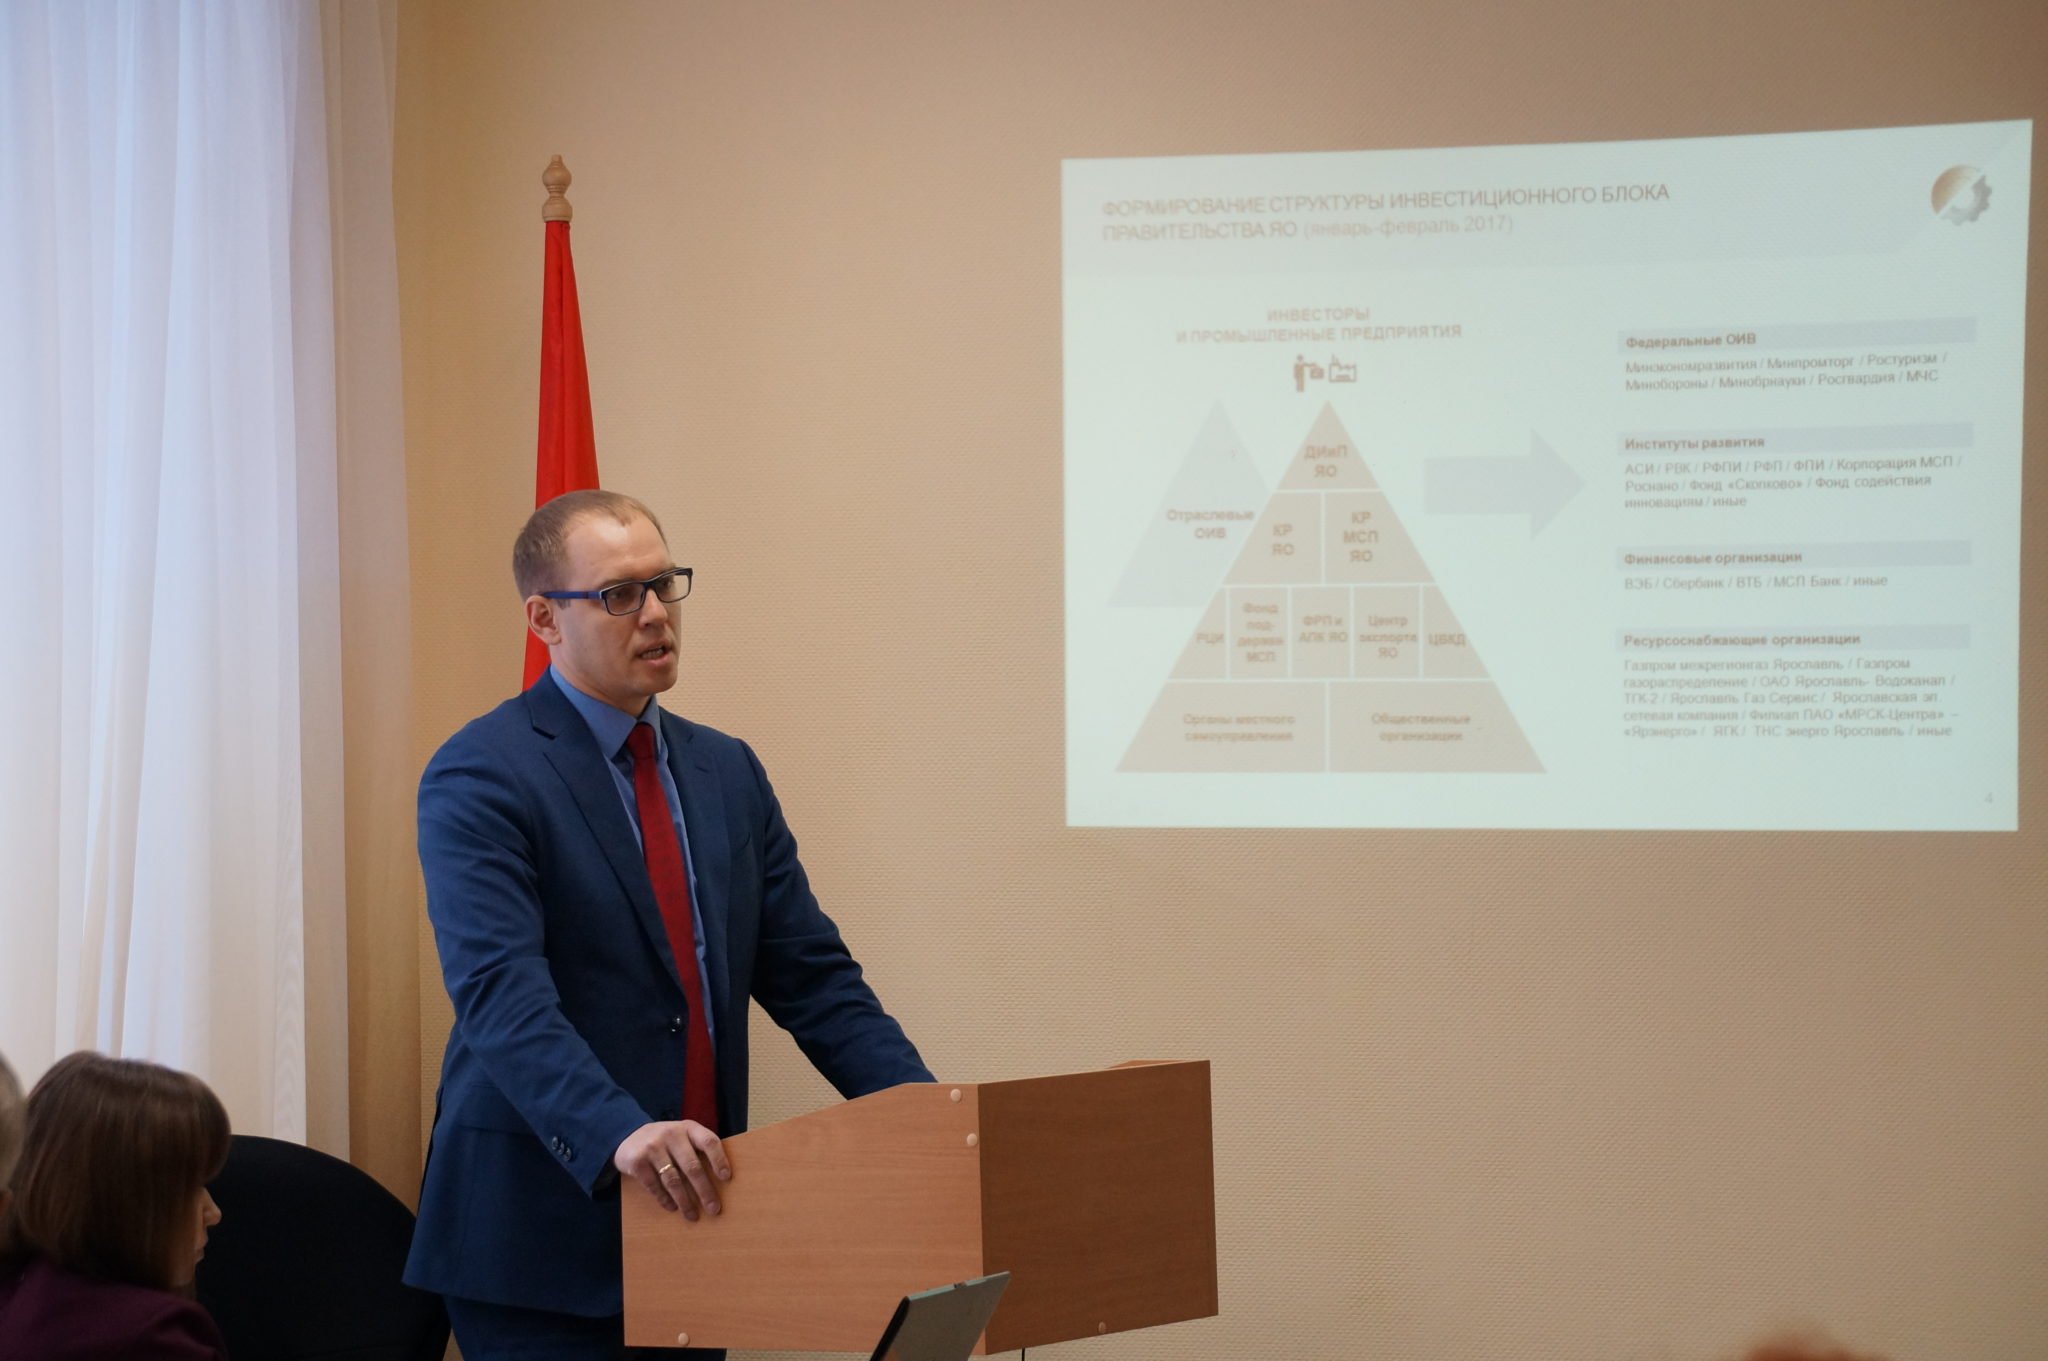 О перспективах развития промышленности региона рассказал на встрече с профактивом Александр Ермолов